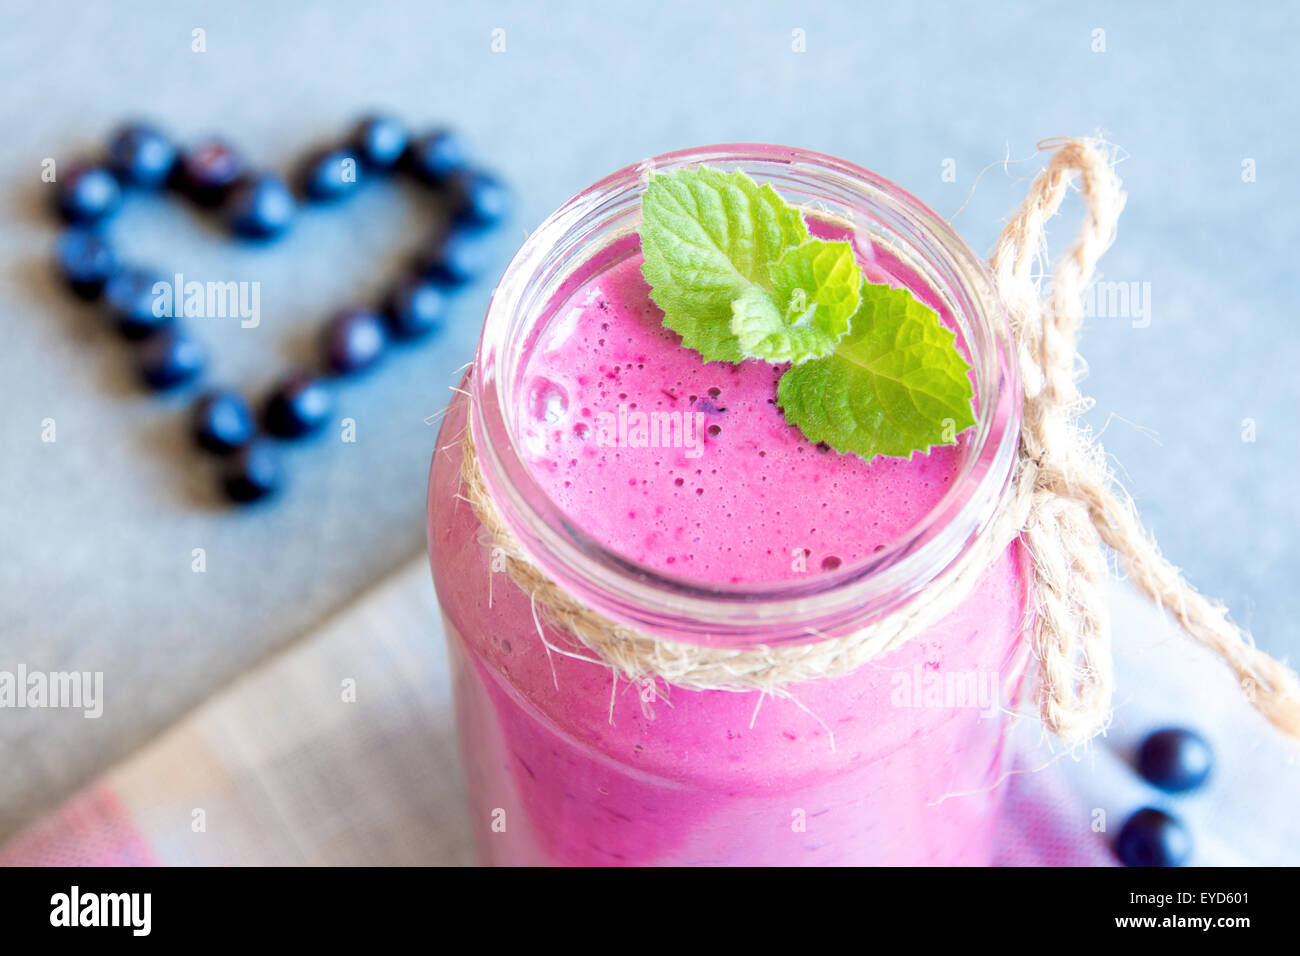 Blueberry batido con menta y el corazón de bayas, orgánica saludable de alimentos crudos Foto de stock